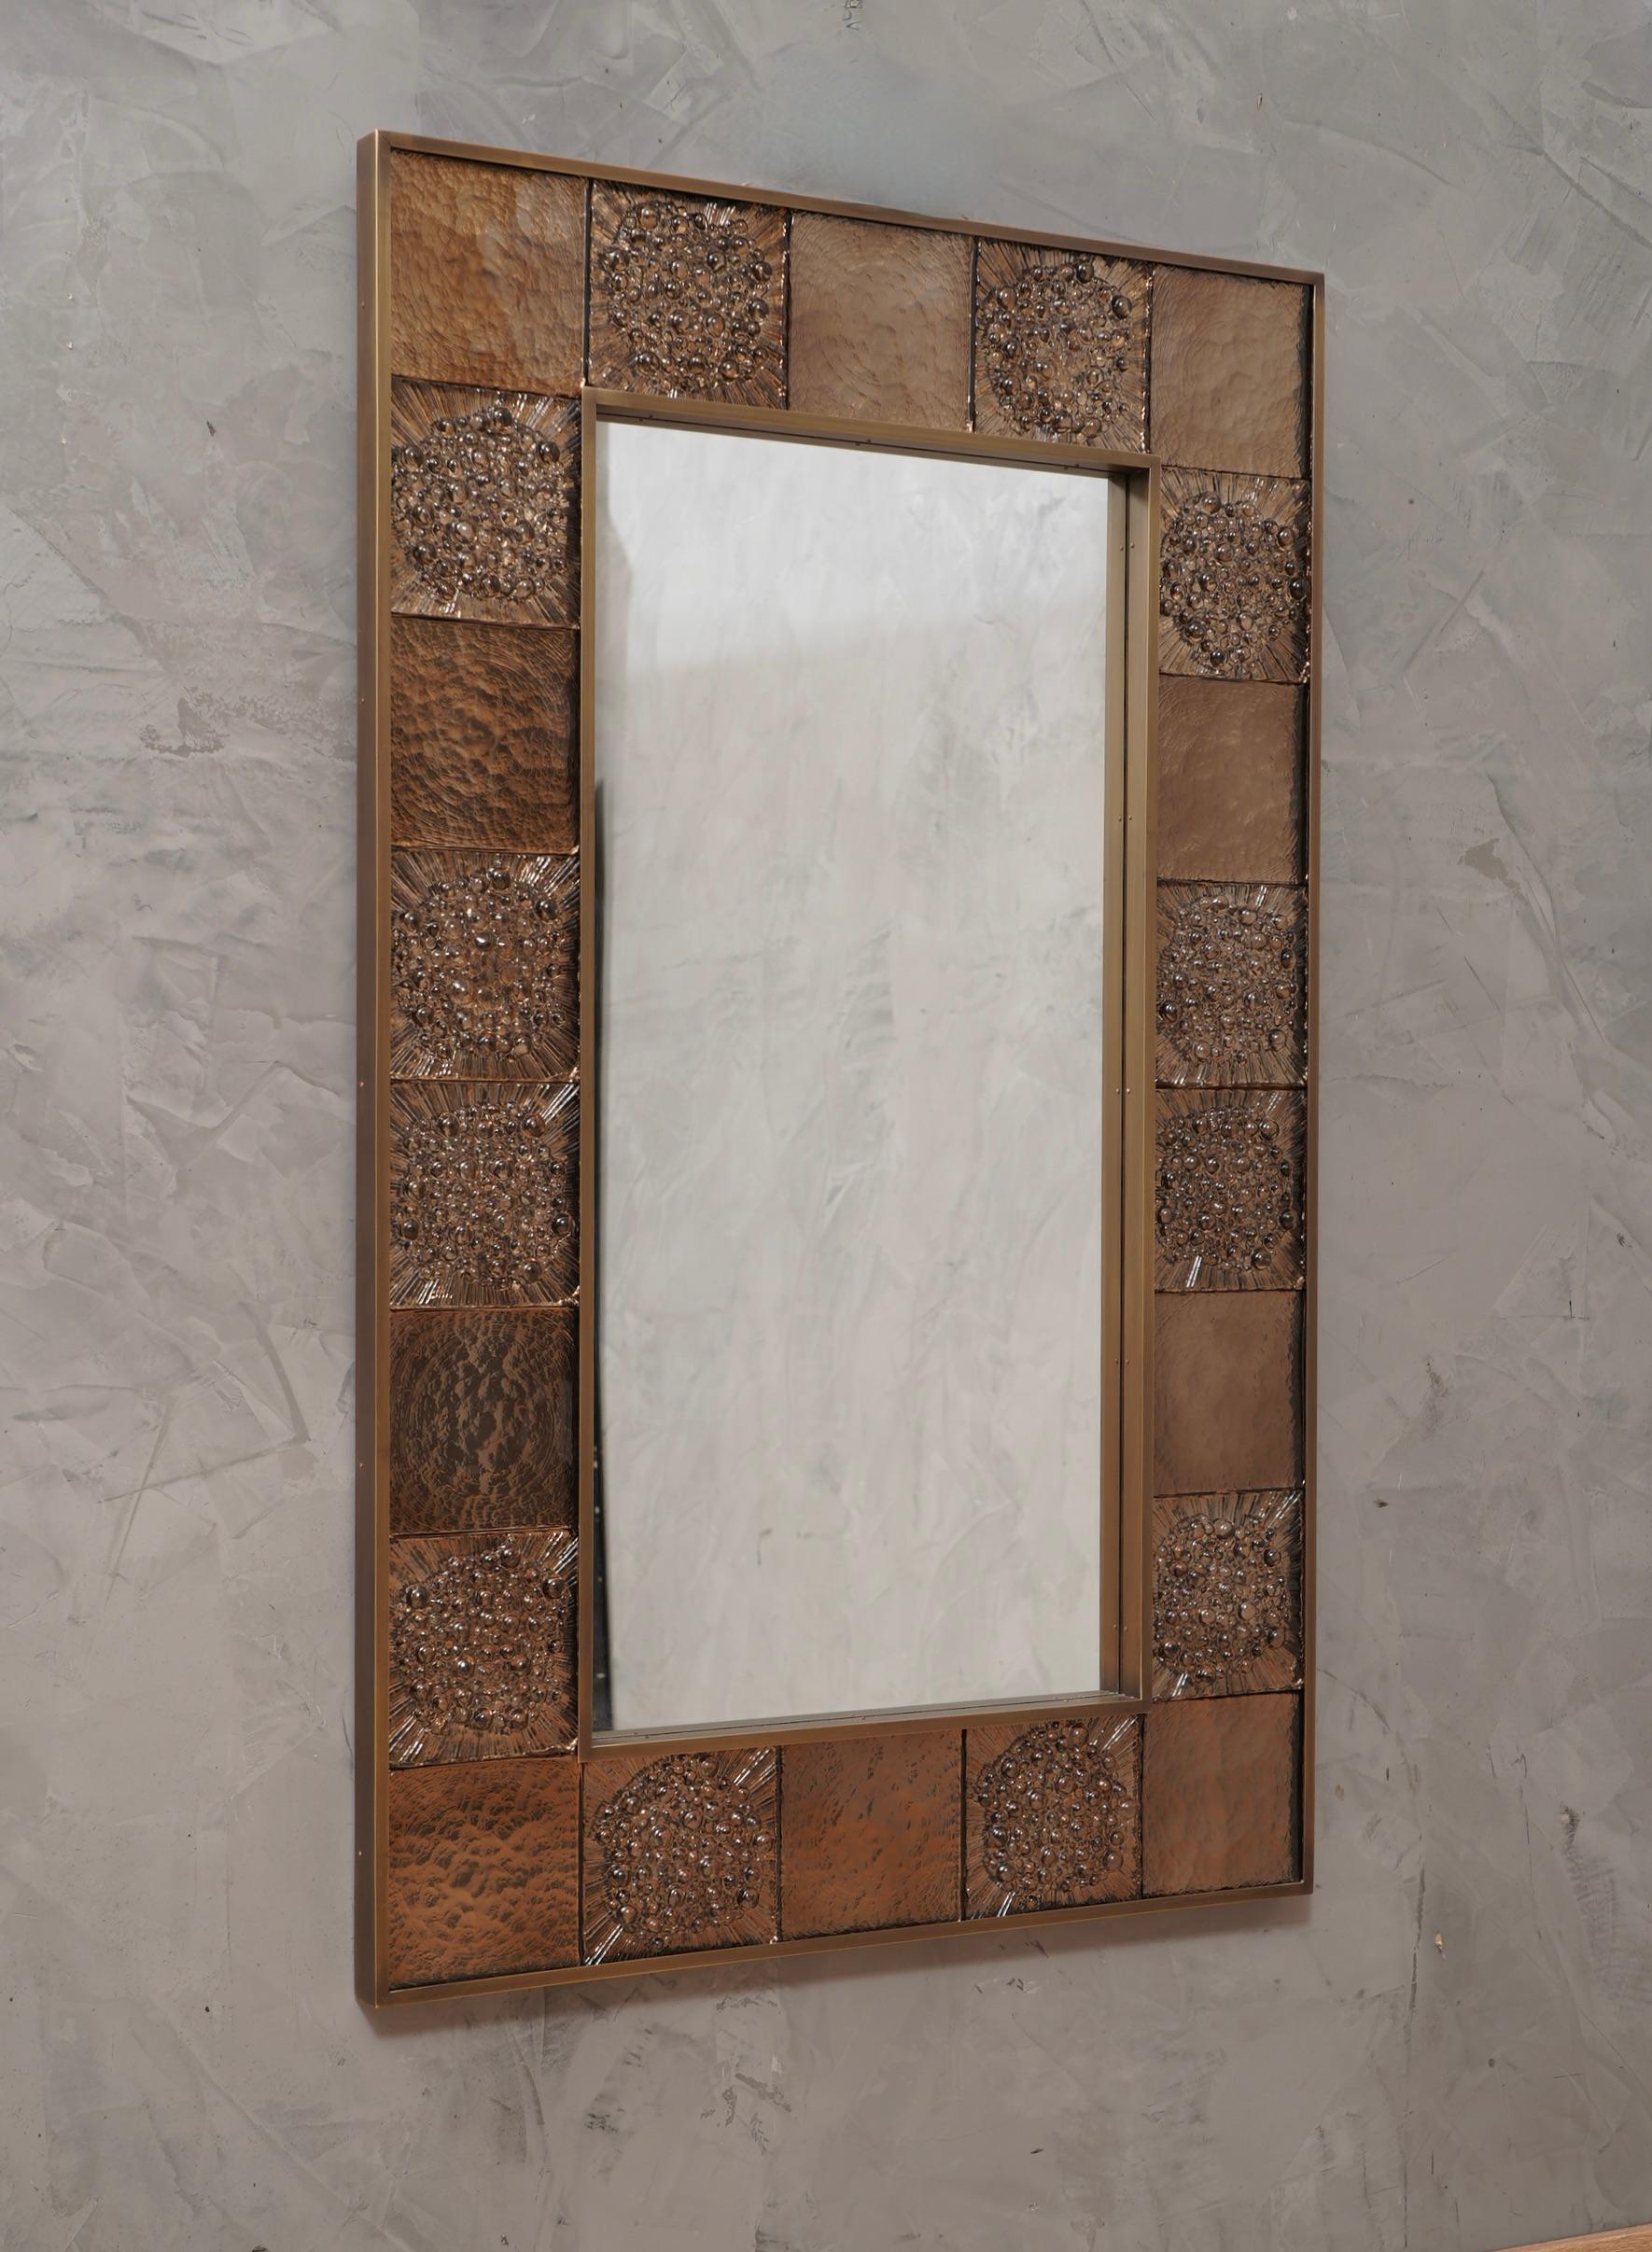 Eine starke brünierte Messing Farbe Rahmen erreichen das Auge des Betrachters verlassen ihn verzaubert; von Murano taubengrau Kunstglas Wandspiegel. 

Die Struktur des Wandspiegels ist aus Holz, in dem das taubengraue Murano-Glas untergebracht ist.